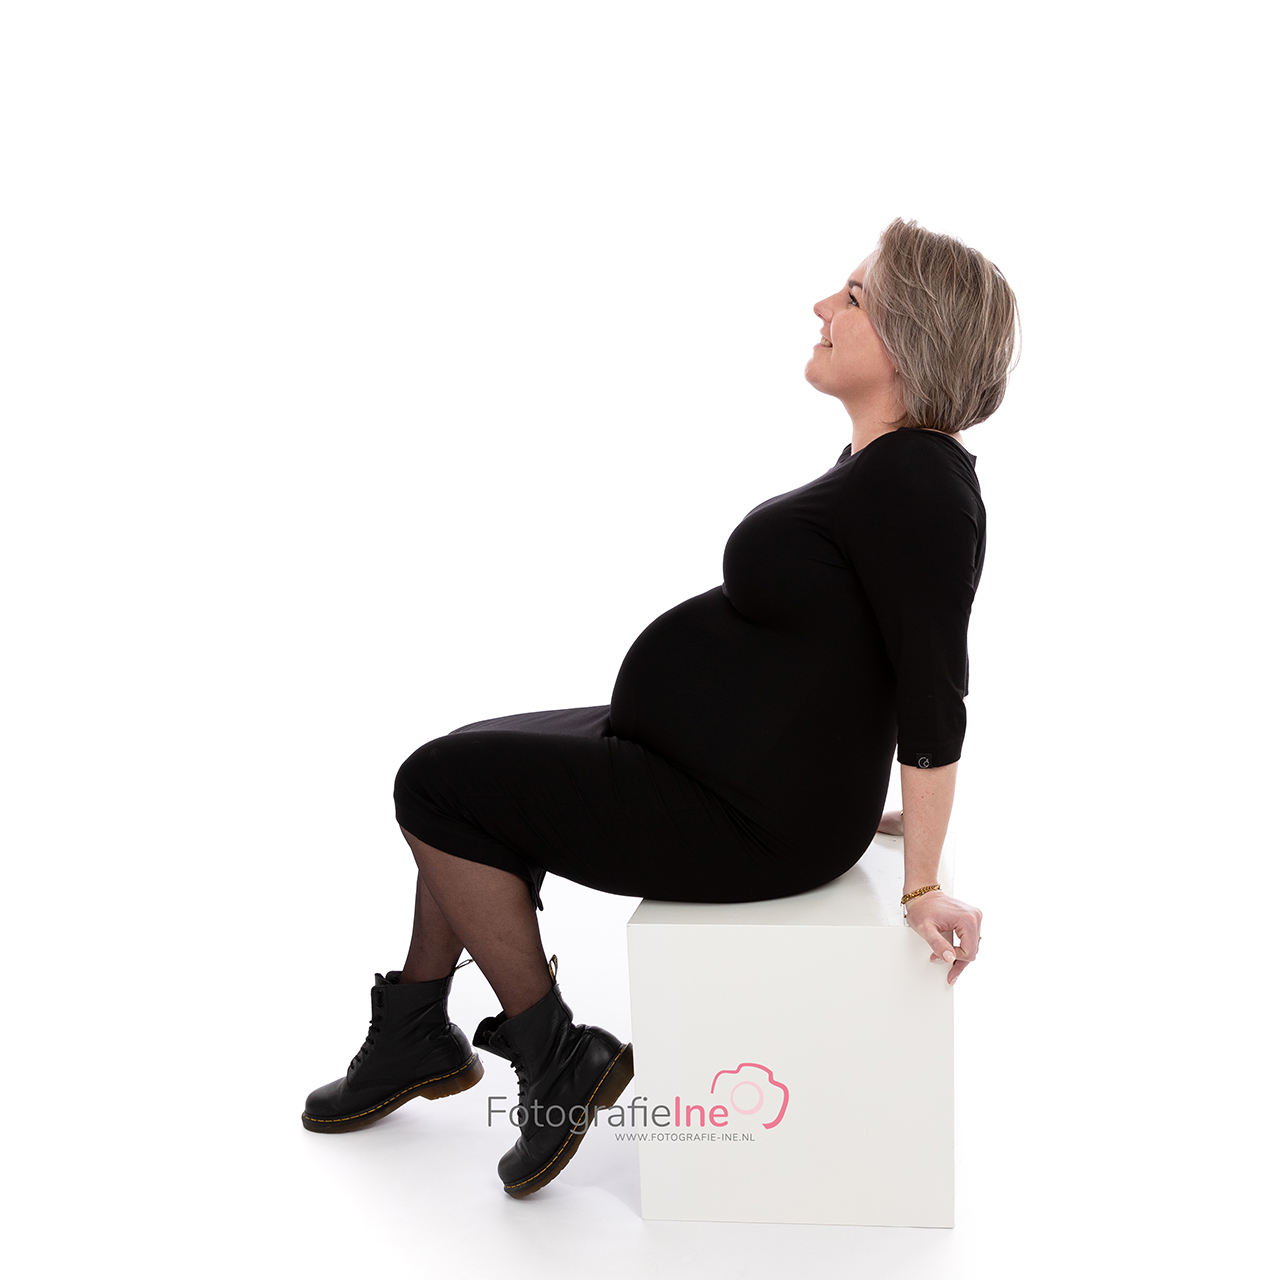 Fotografie Ine van Boerdonk Fotograaf Boekel zwangerschapsshoot belly fotoshoot op blok zwart jurkje